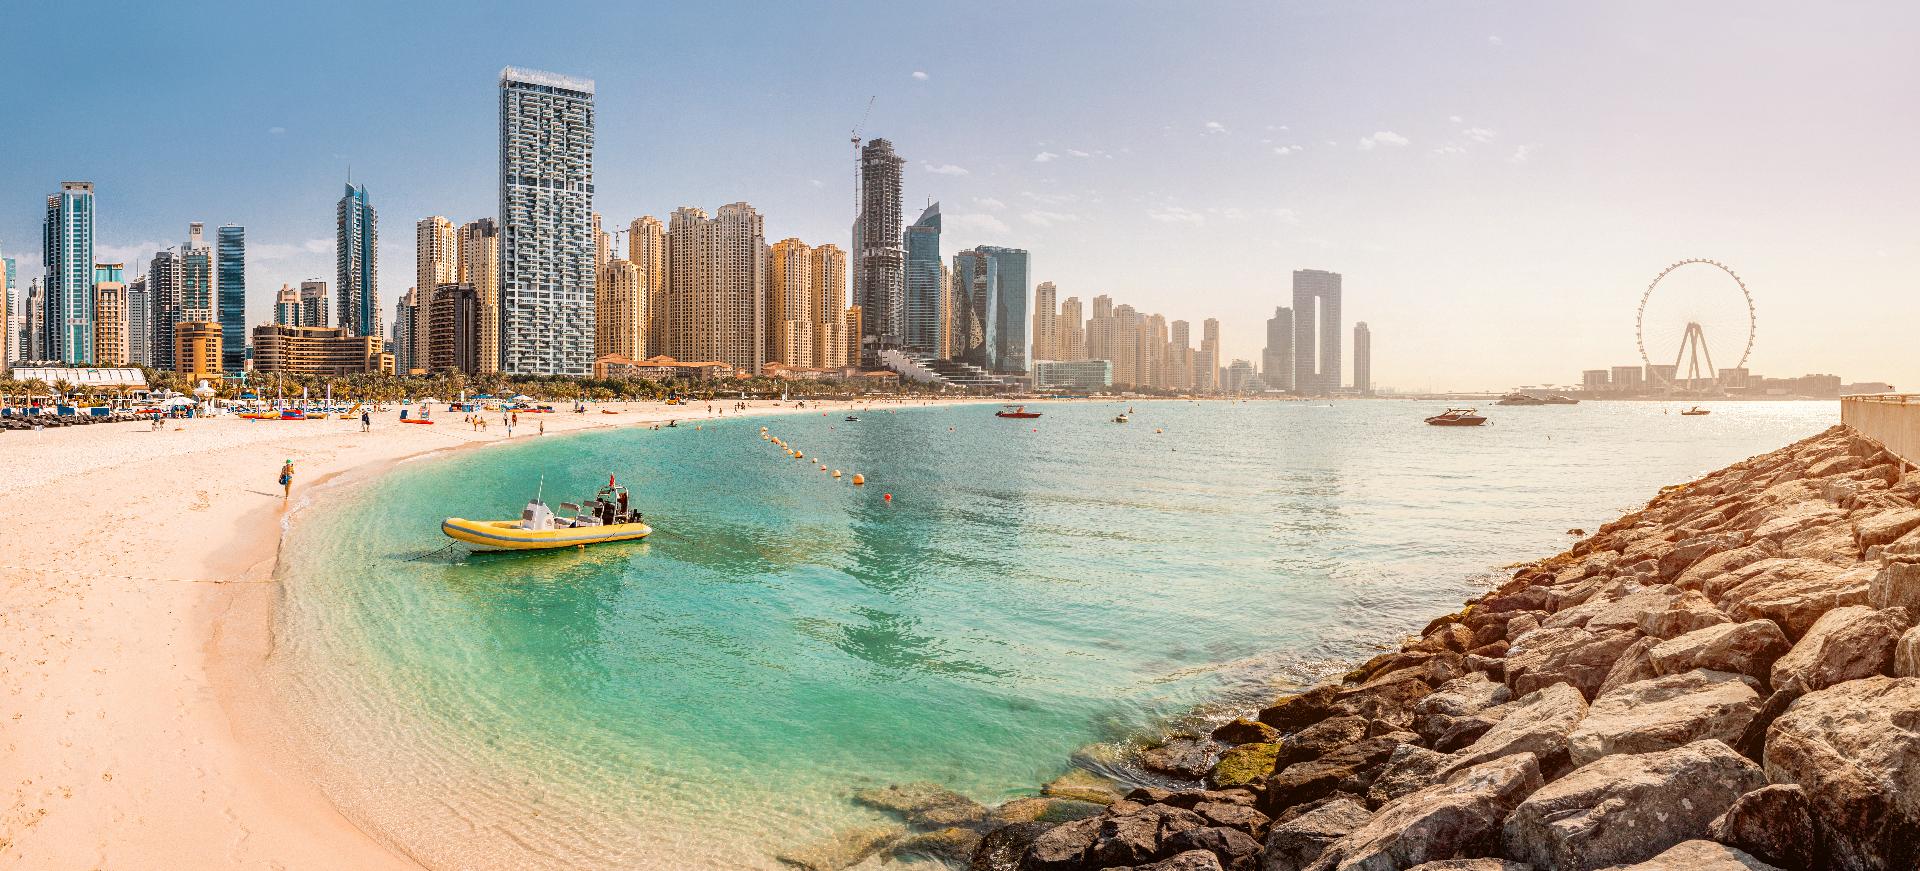 Playa de arena y aguas azules con la famosa Dubai Eye y numerosos rascacielos con hoteles